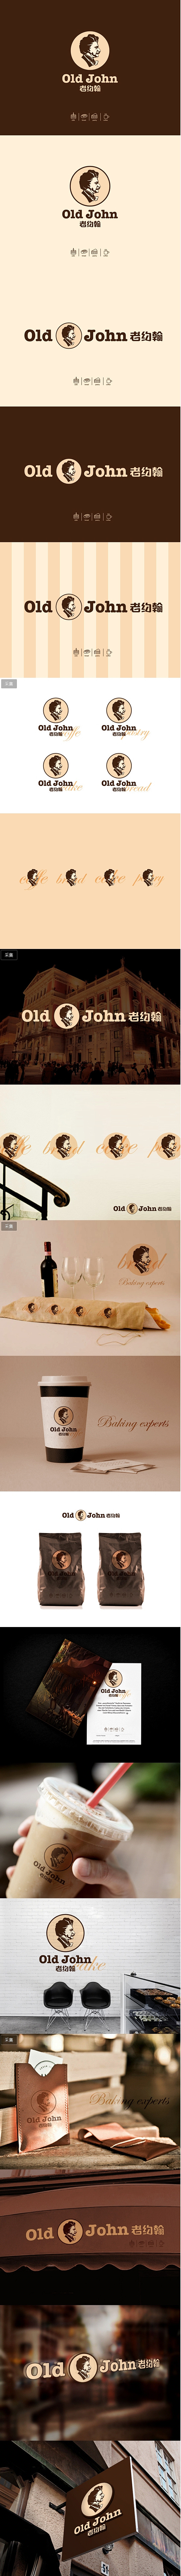 老约翰品牌设计/人物标志设计/餐厅log...